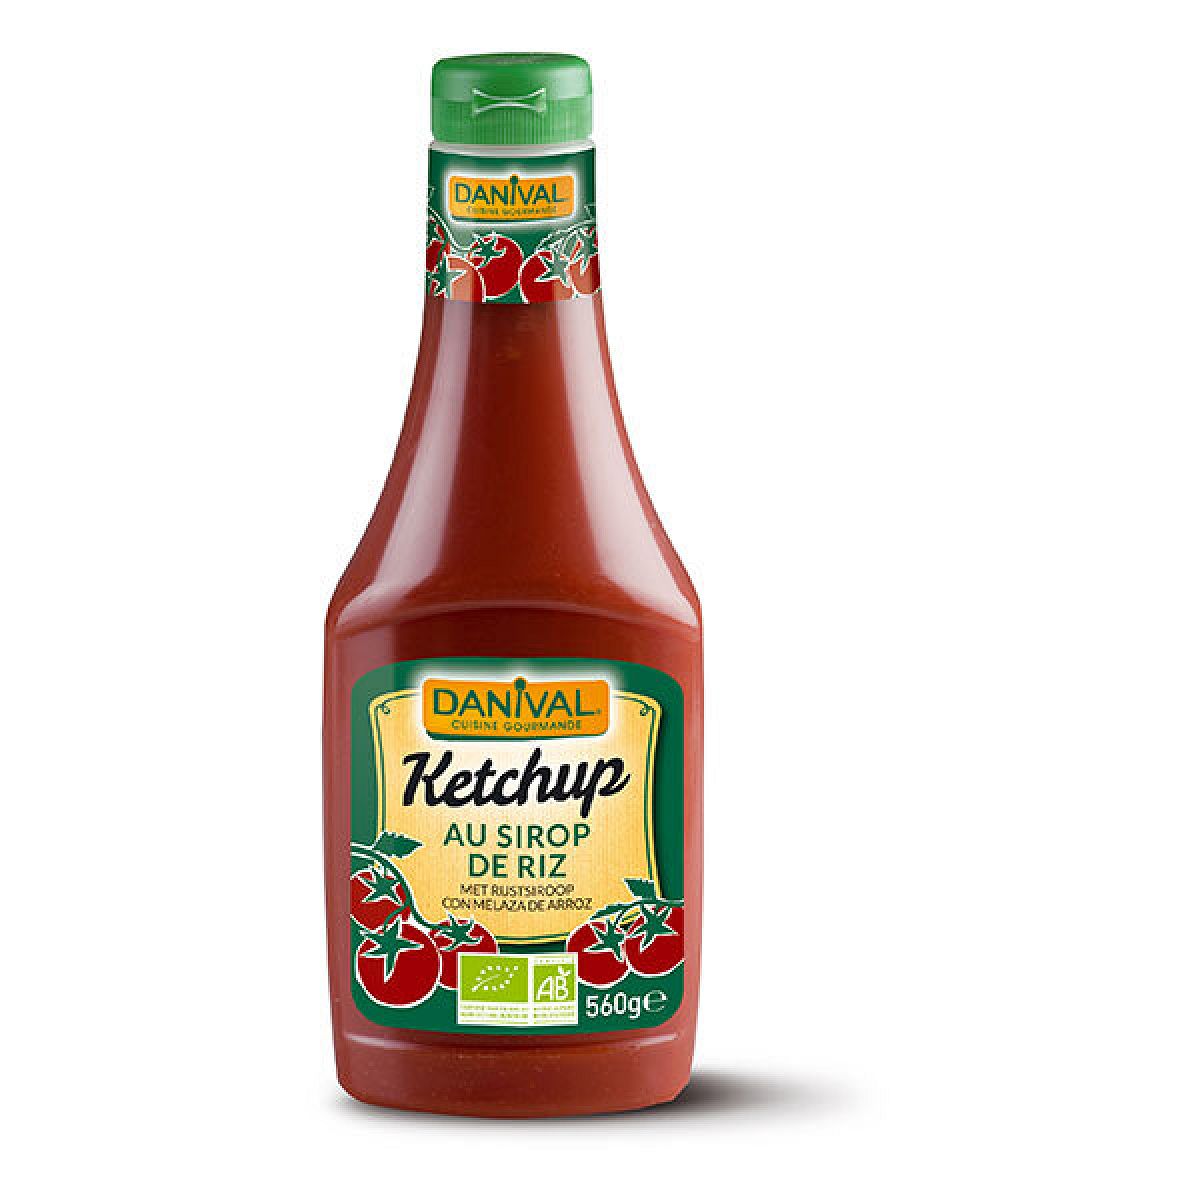 Danival - Ketchup 560gr